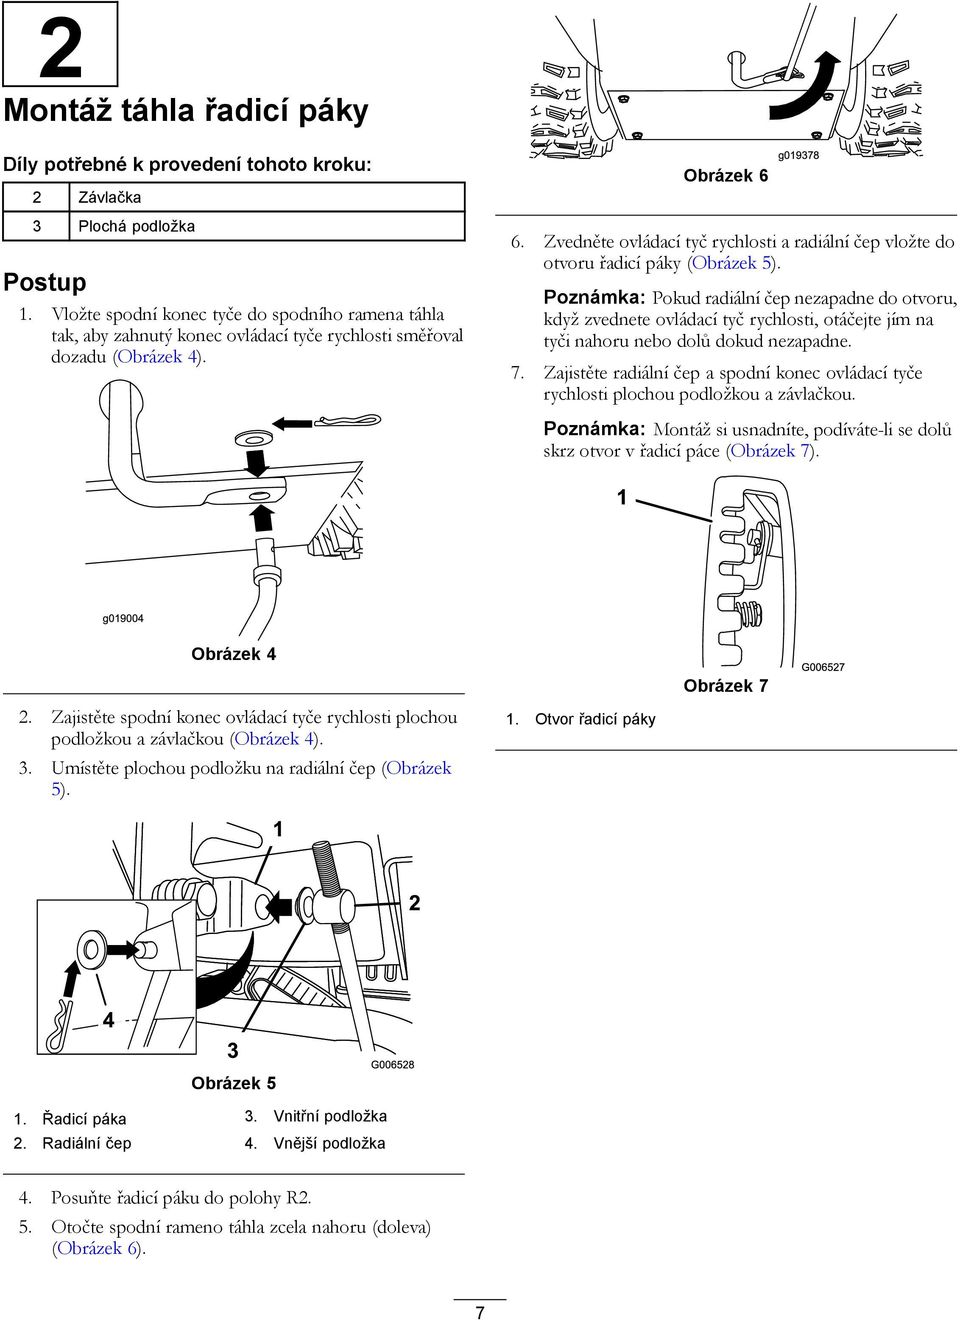 Zvedněte ovládací tyč rychlosti a radiální čep vložte do otvoru řadicí páky (Obrázek 5).